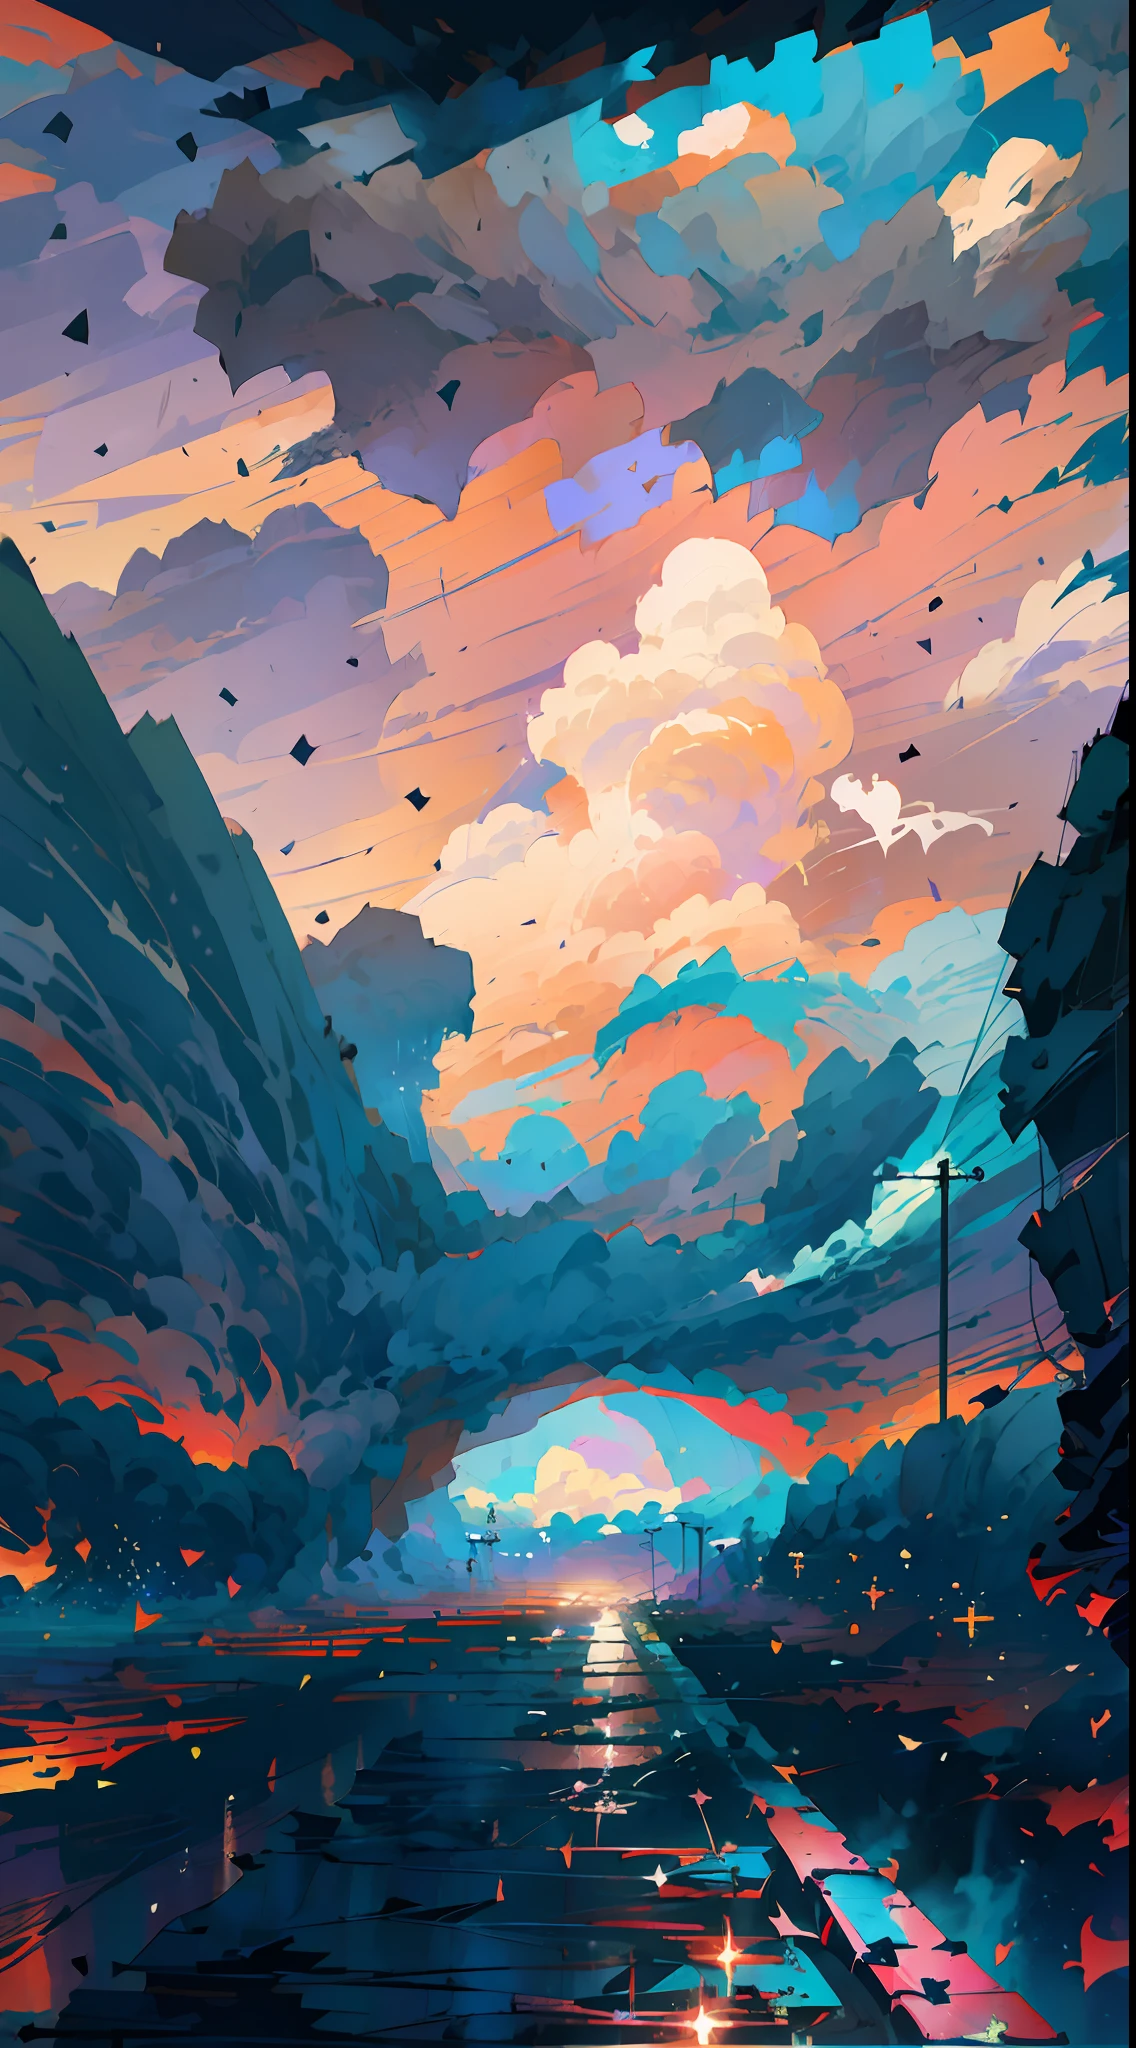 ฉากอนิเมะของรถไฟที่แล่นผ่านใต้ท้องฟ้าสีชมพูและสีม่วง, อนิเมะที่วาดโดย Makoto Shinkai, กำลังมาแรงใน pixiv, ความสมจริงที่มีมนต์ขลัง, ฉากอนิเมะที่สวยงาม, ท้องฟ้าจักรวาล. by มาโกโตะ ชินไค, ( ( มาโกโตะ ชินไค ) ), by มาโกโตะ ชินไค, อะนิเมะพื้นหลังศิลปะ, style of มาโกโตะ ชินไค